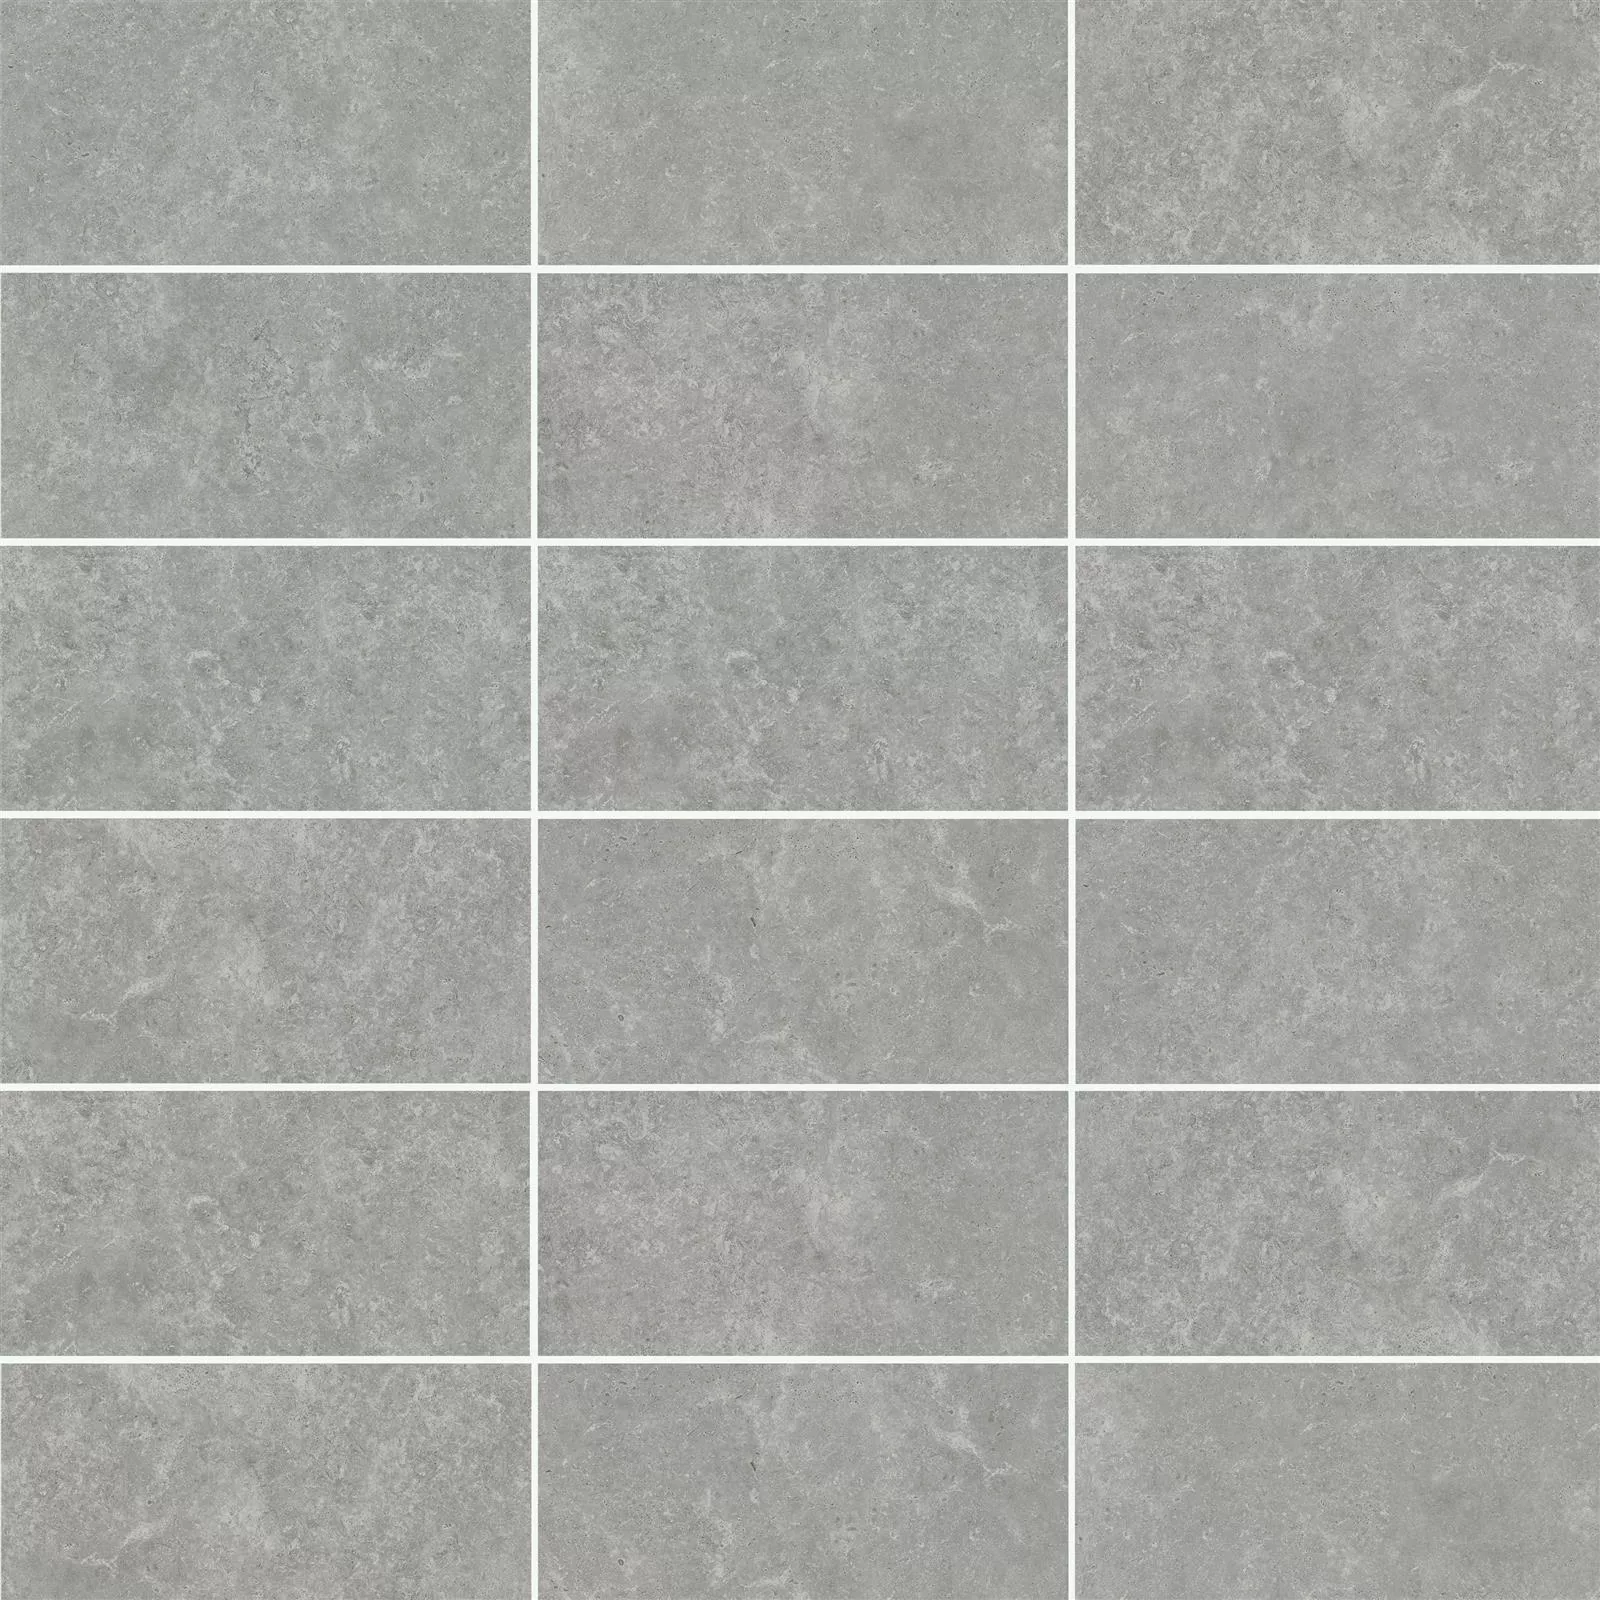 Sample Terrace Tiles Corroy Grey 45x90x2cm